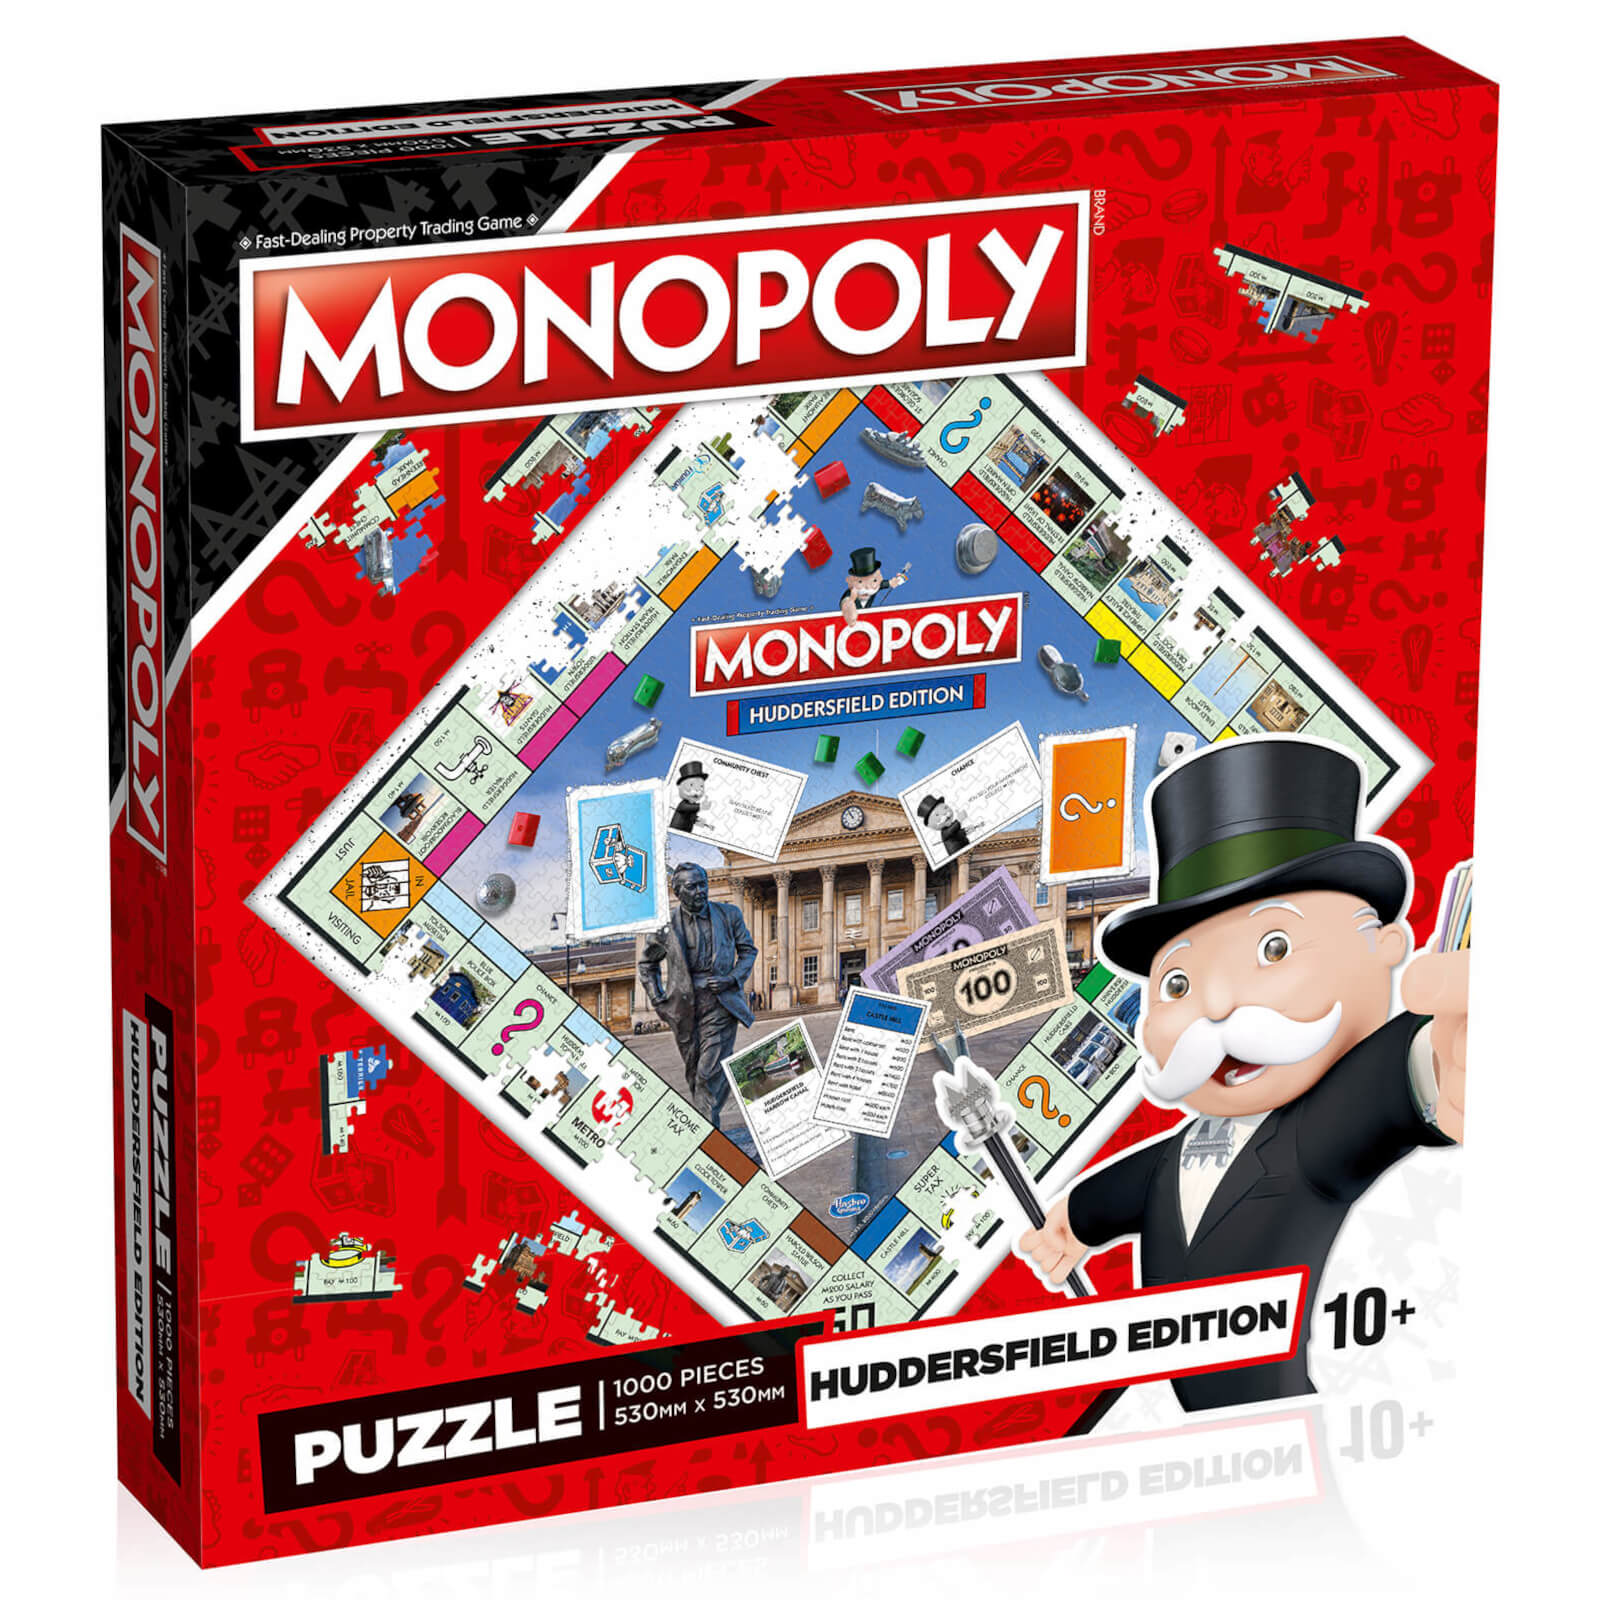 Huddersfield Monopoly Jigsaw